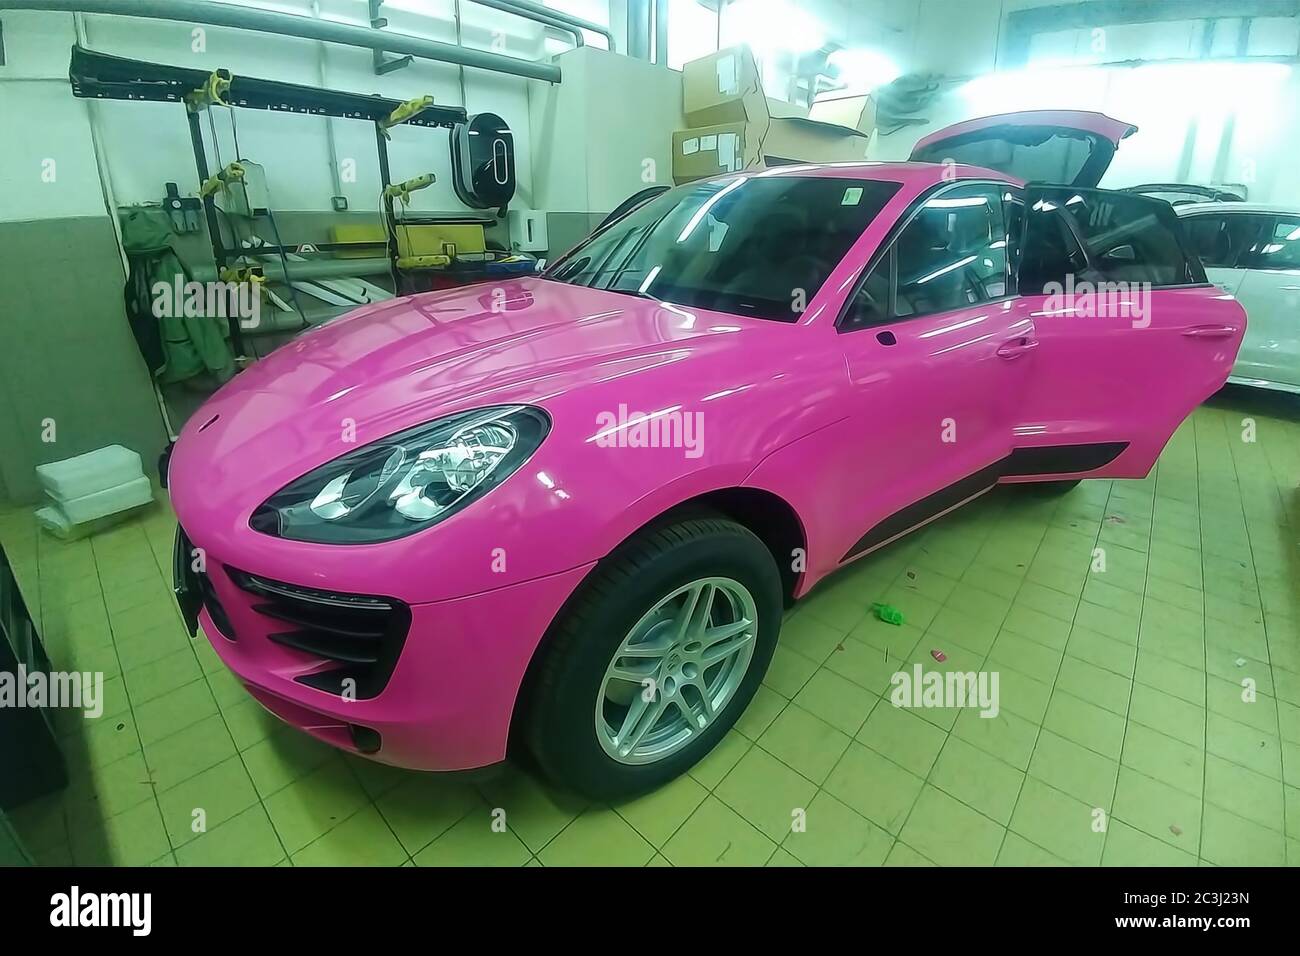 Mosca, Russia - 09 maggio 2019: Porsche Macan in centro servizi, auto wrapping, mettere in vinile rosa o film in auto. Foto Stock